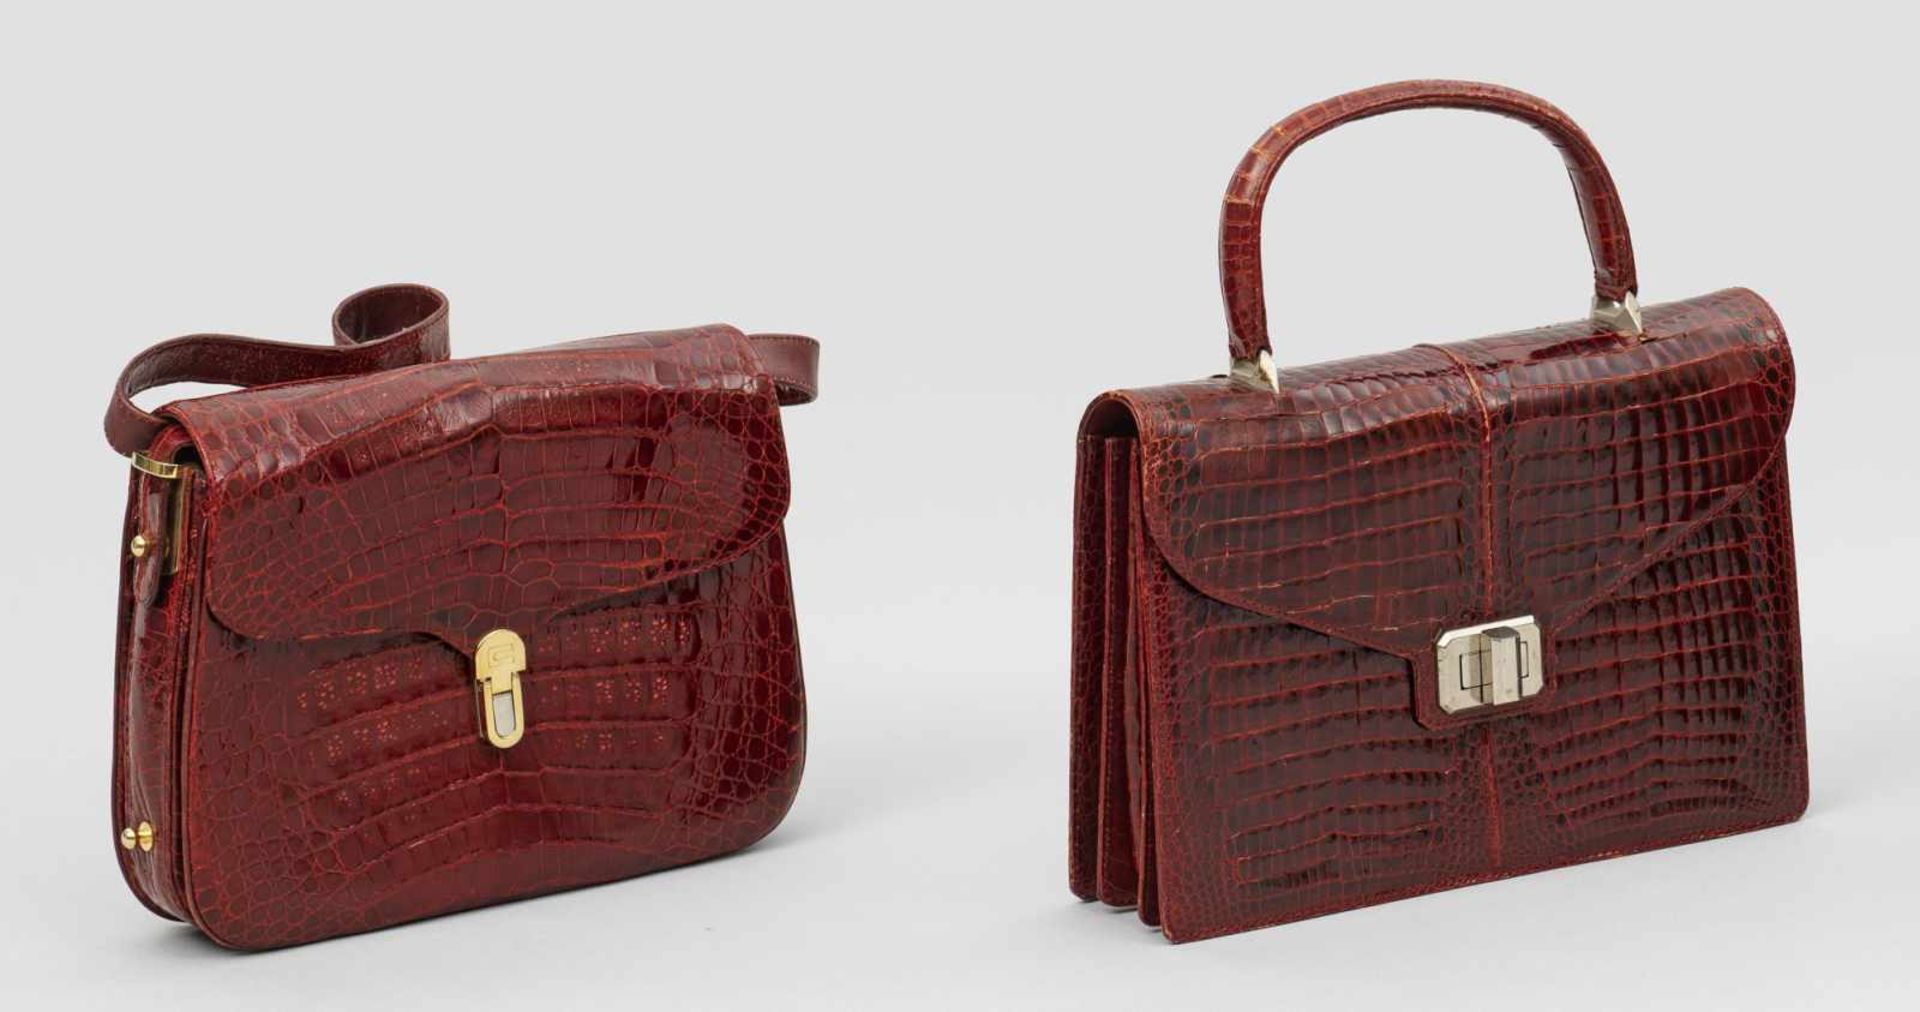 Zwei extravagante Vintage-HandtaschenZwei extravagante Vintage-Handtaschen Bord